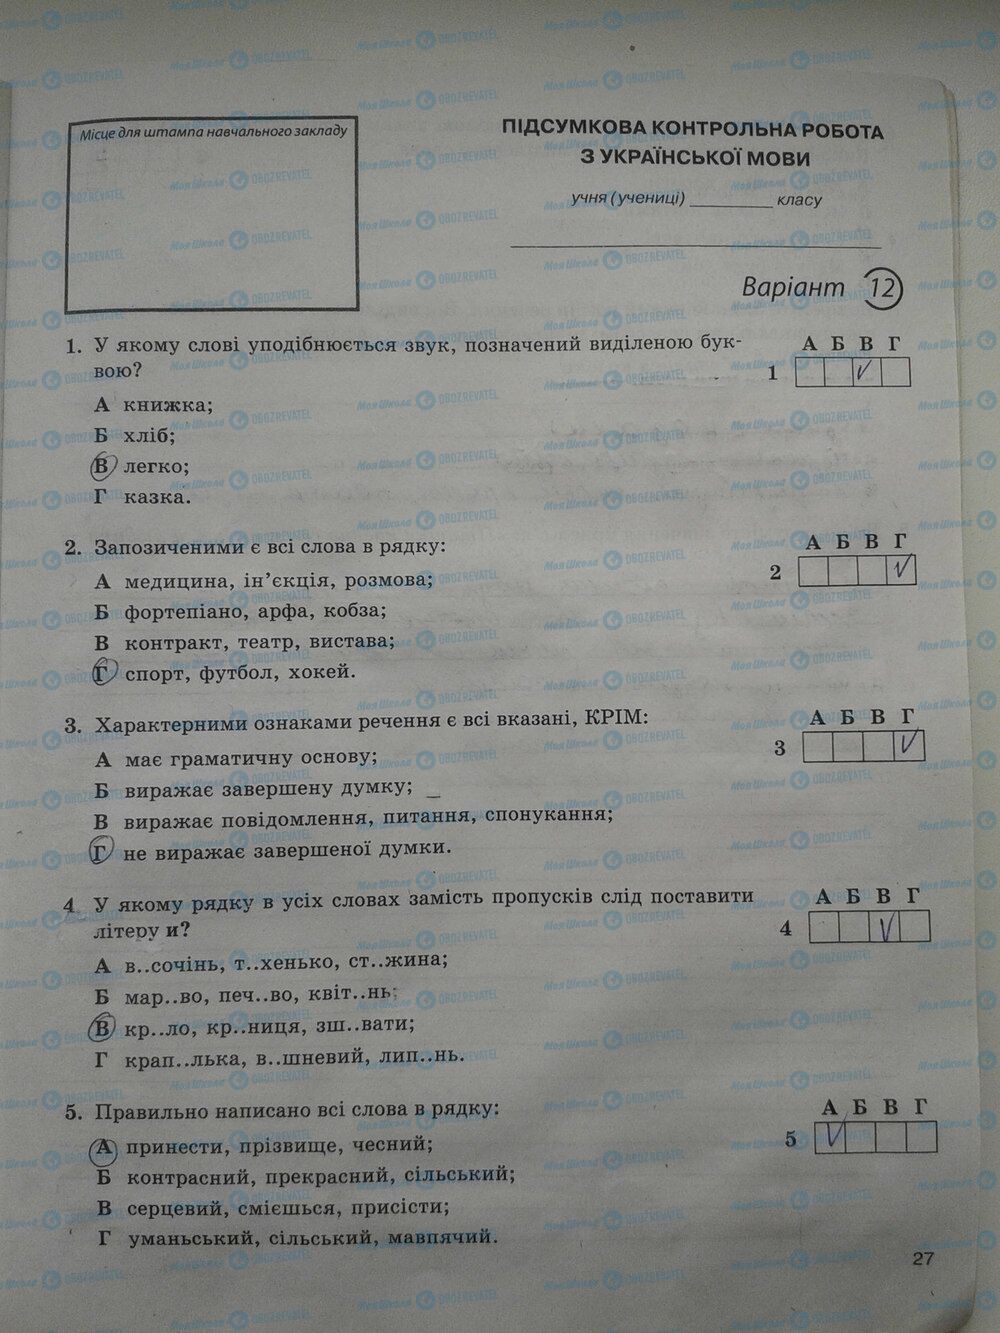 ГДЗ Укр мова 5 класс страница стр. 27